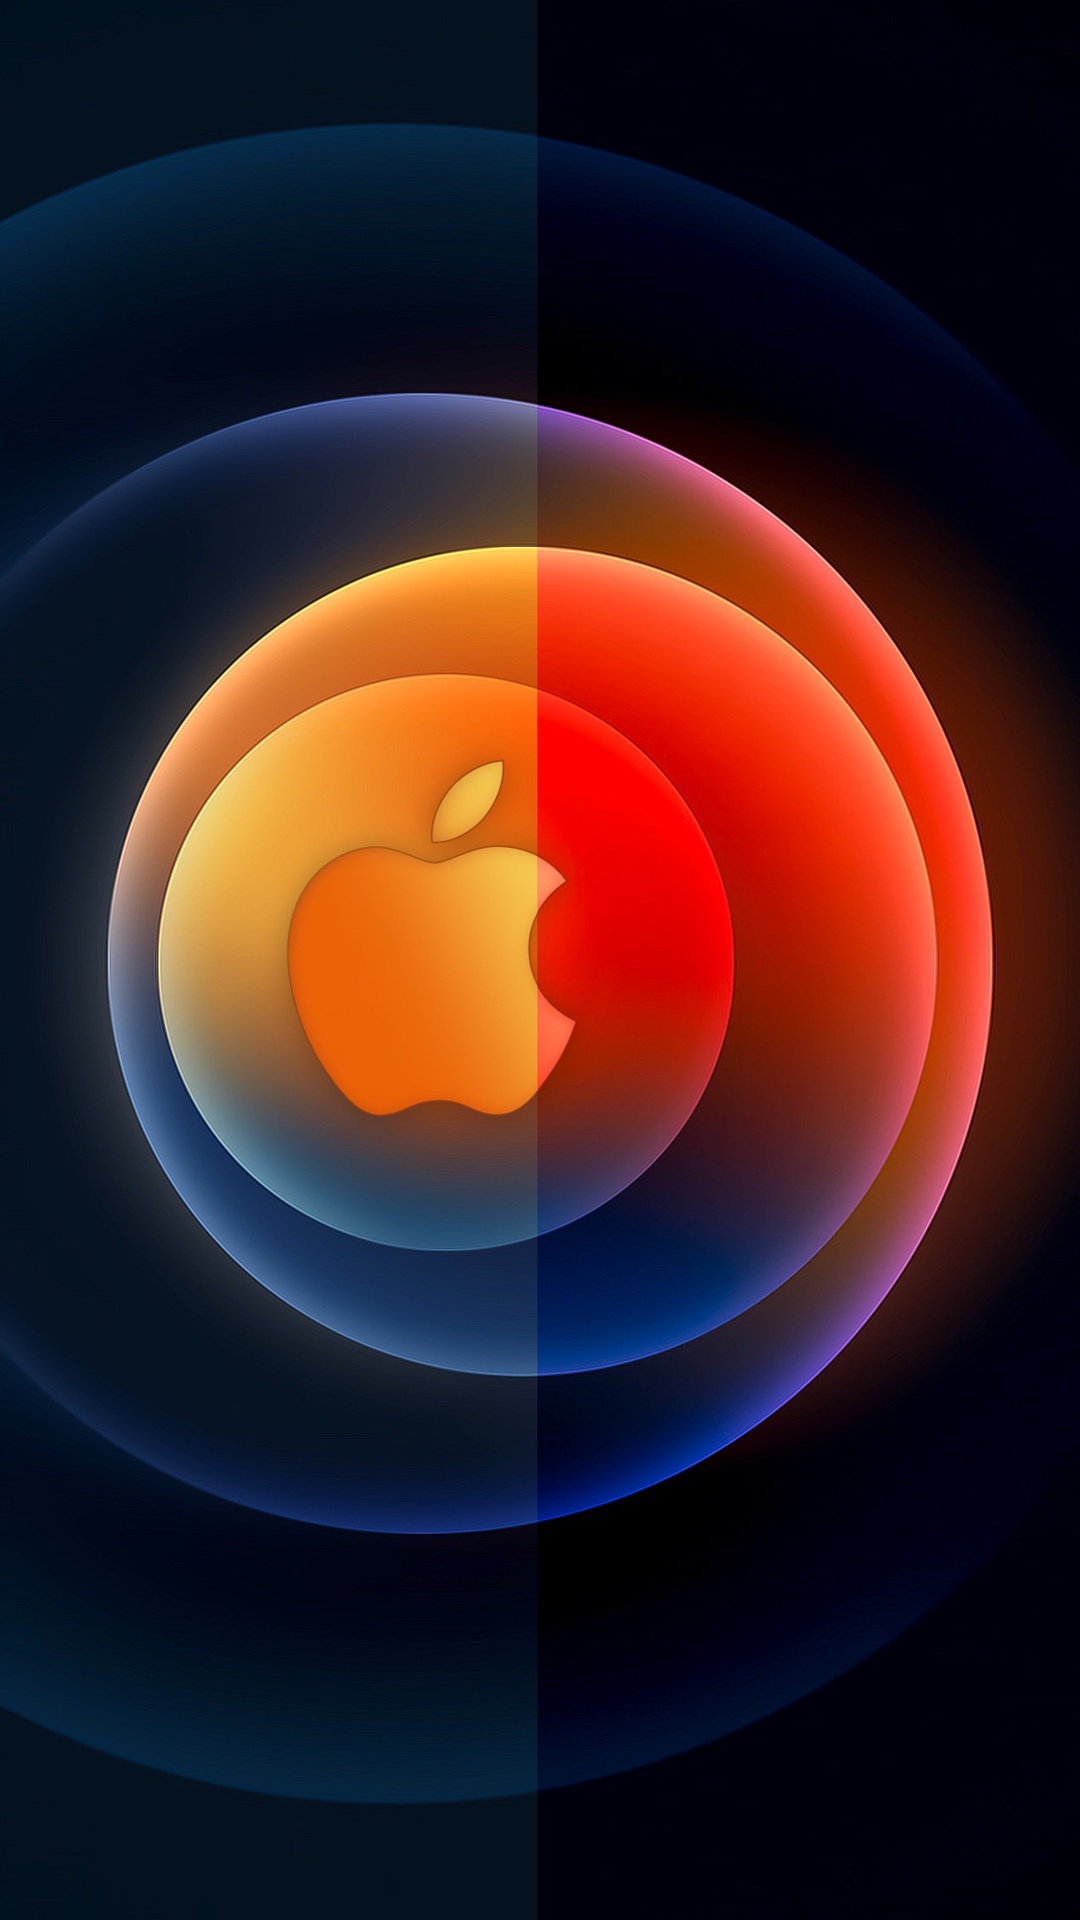 Apples, Ios, Tablet, Atmosphere, Orange. Wallpaper in 1080x1920 Resolution